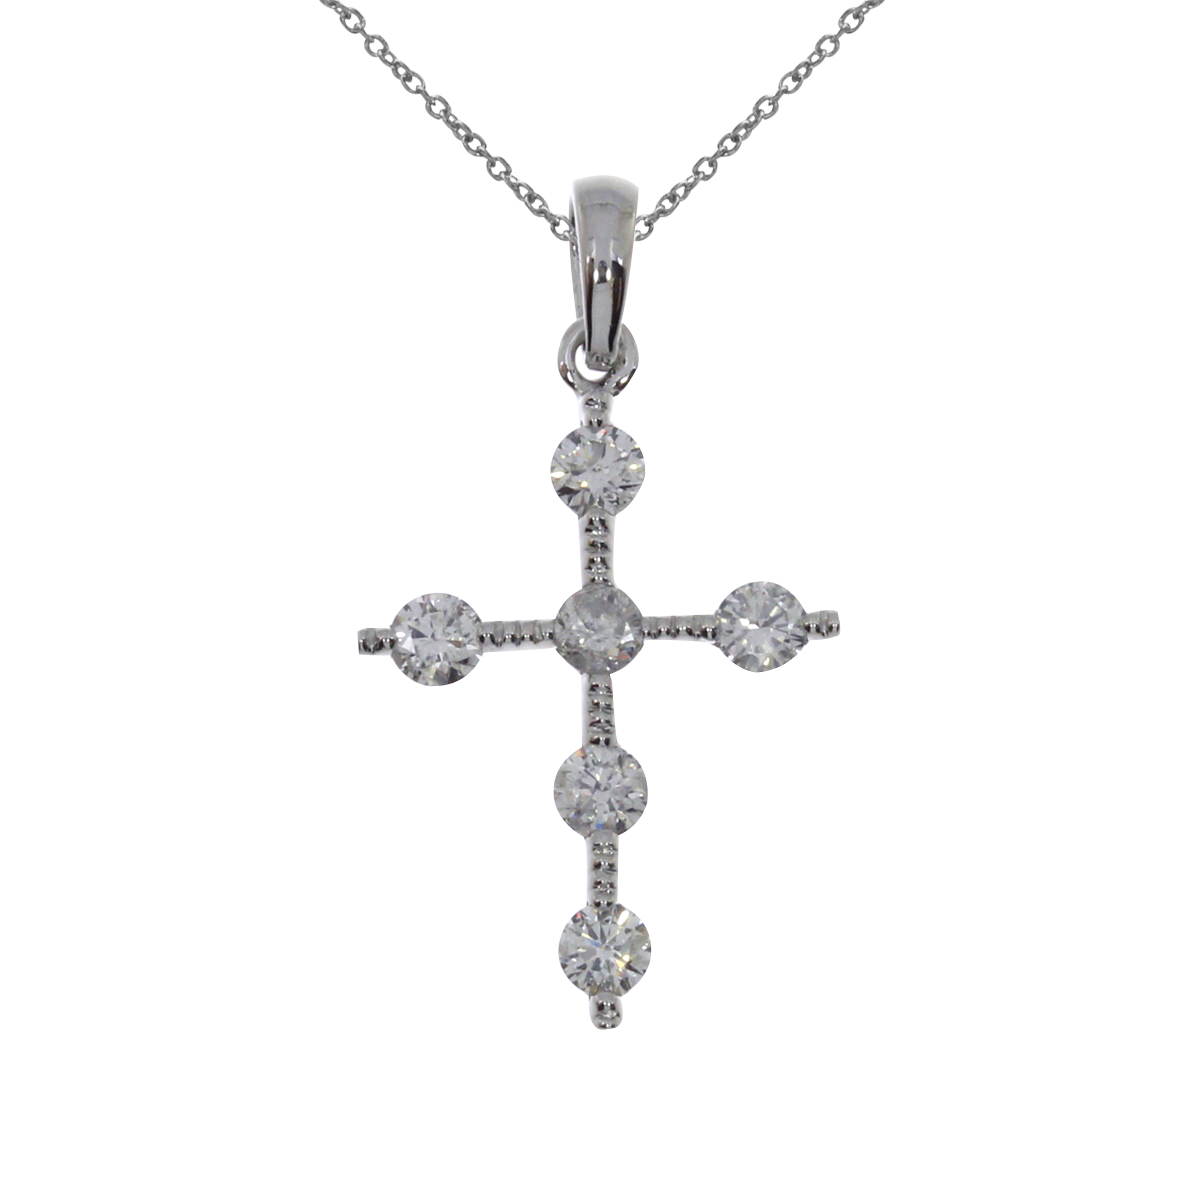 JCX3009: 14k white gold cross pendant with shimmering diamonds.